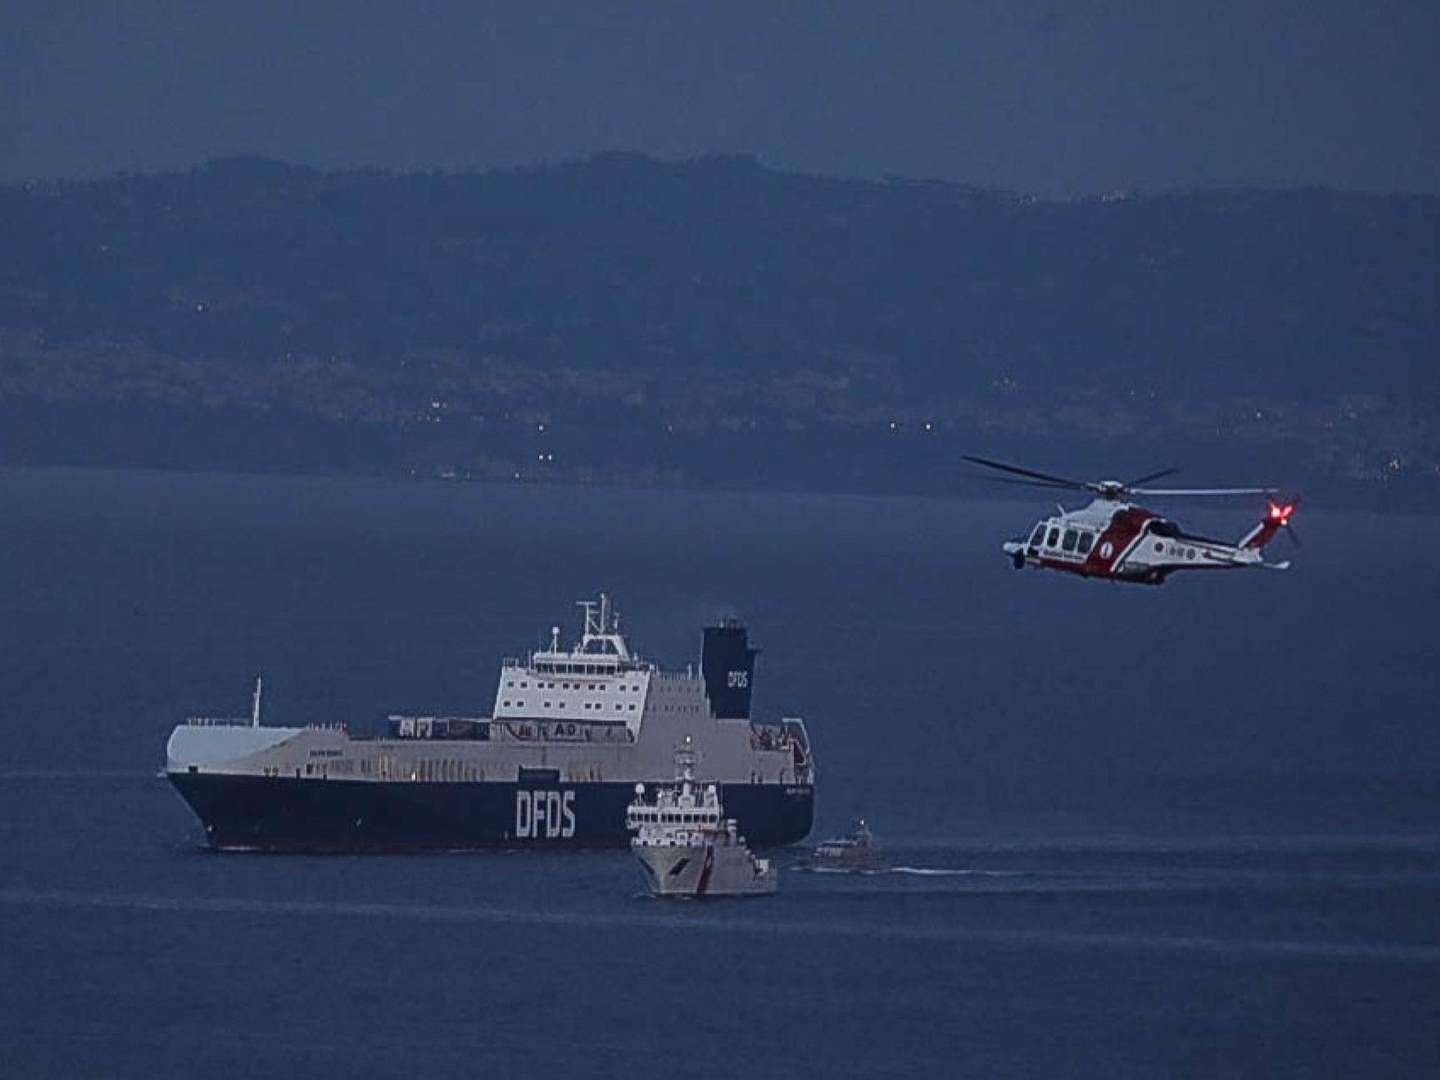 Fragtskibet "Galata Seaways" blev efterfølgende ledsaget af italienske myndigheder til havnen i Napoli efter en operation, hvor 15 migranter blev tilbageholdt på skibet af italienske specialstyrker. | Foto: -